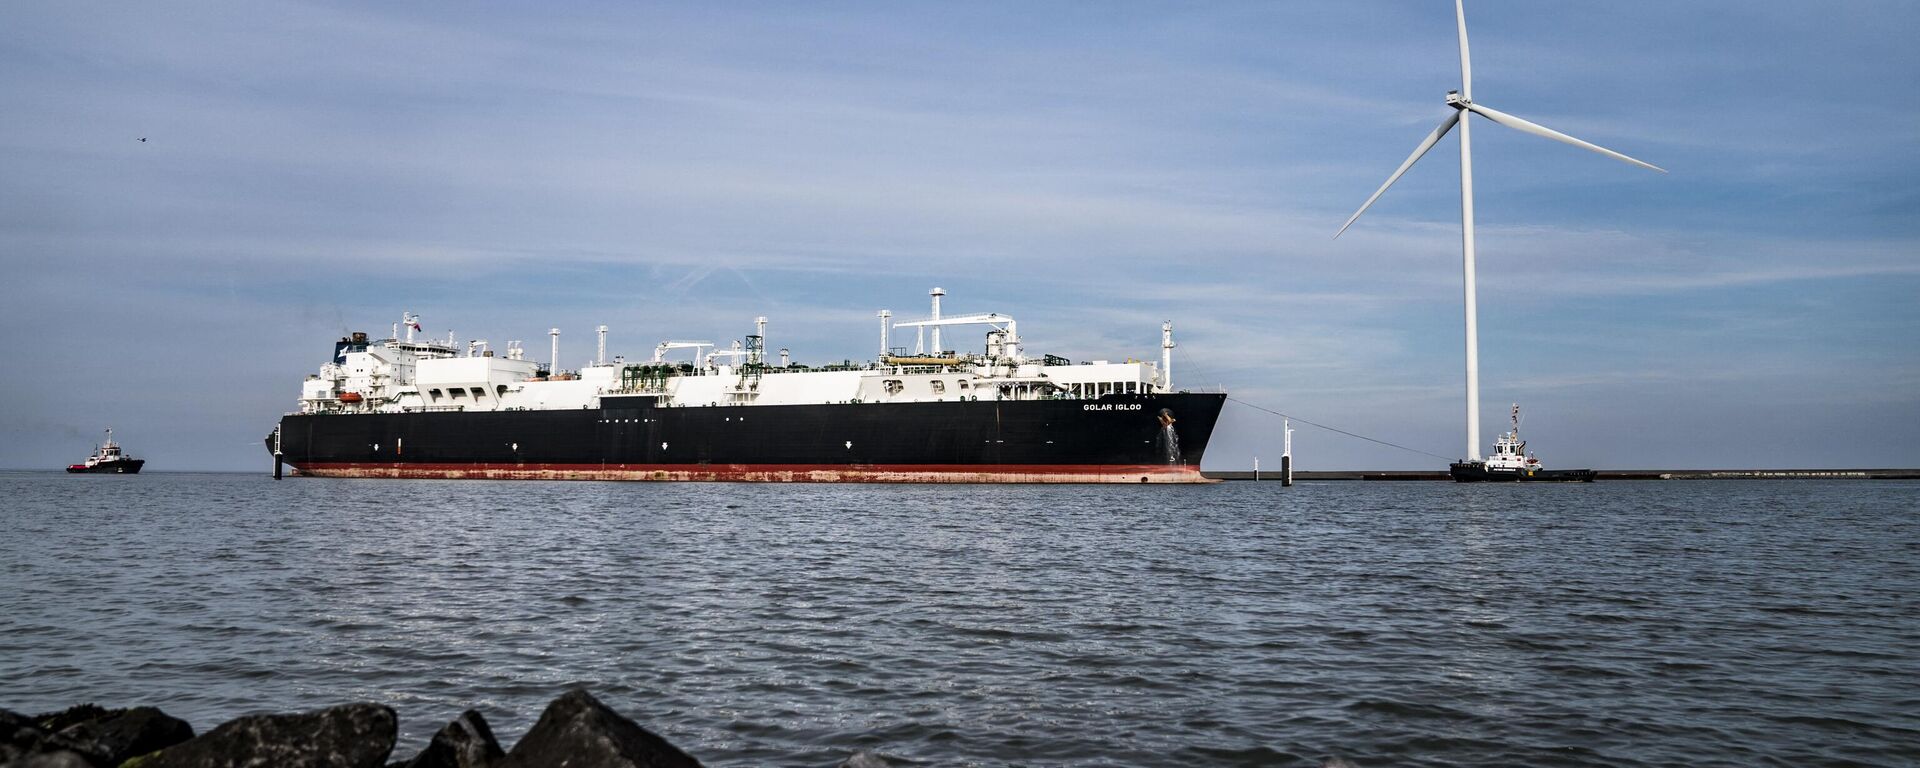 LNG (liquefied natural gas) tanker 'Golar Igloo' arrives in the port of Eemshaven, north of Groningen, on September 4, 2022. - Sputnik International, 1920, 13.11.2022